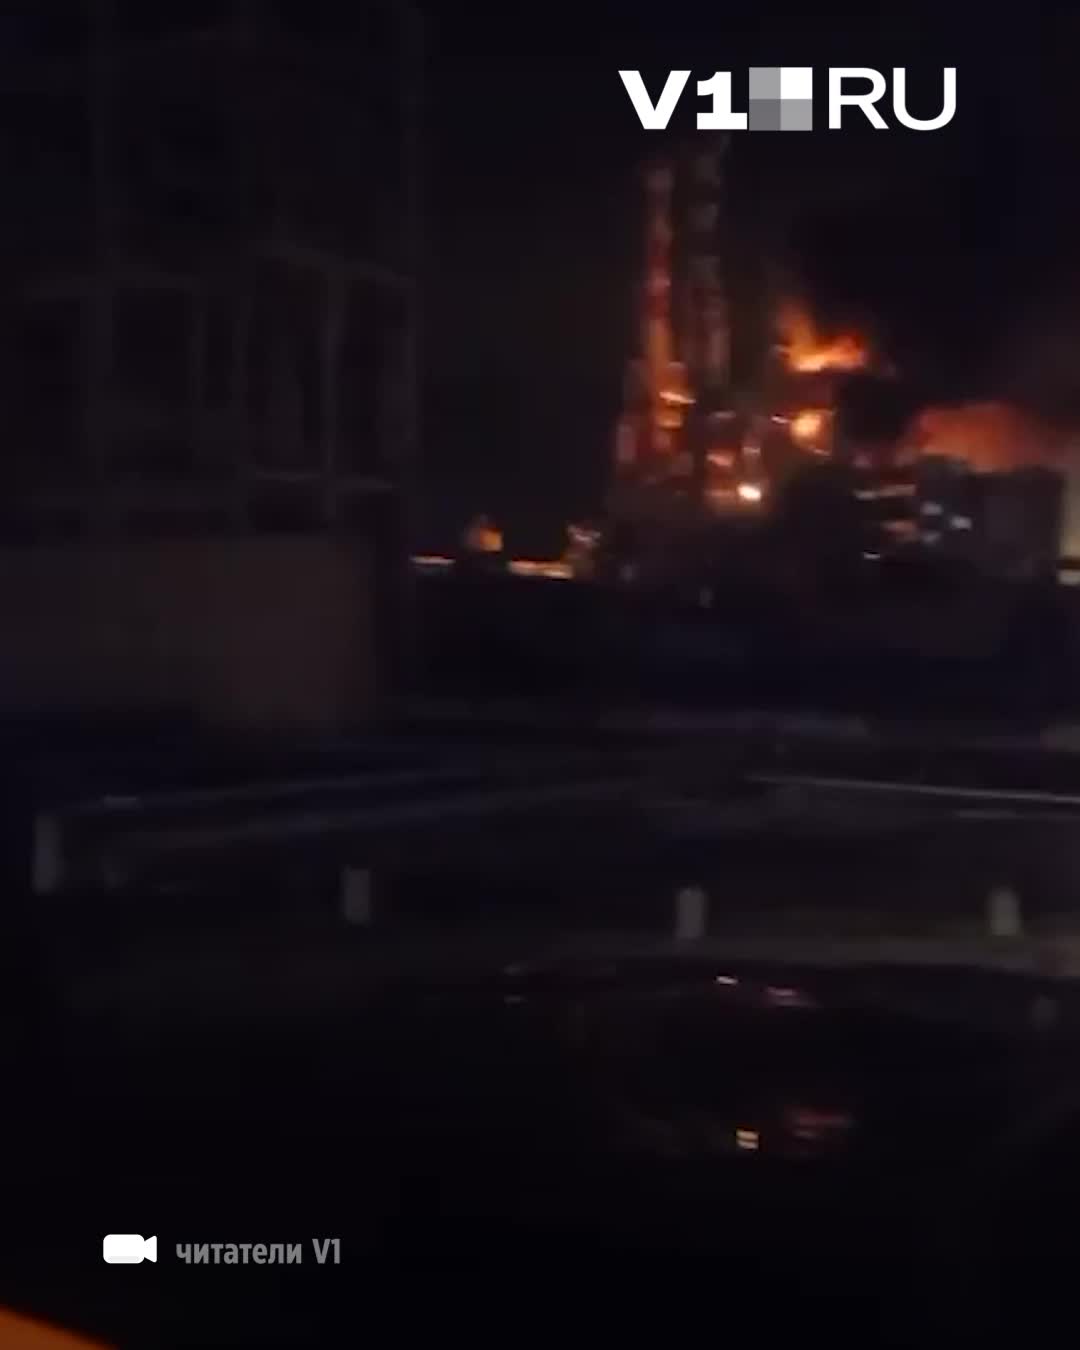 Eine der Haupteinheiten der Wolgograder Raffinerie „ELOU-AVT-5 stand Berichten zufolge infolge eines Drohnenangriffs in Flammen